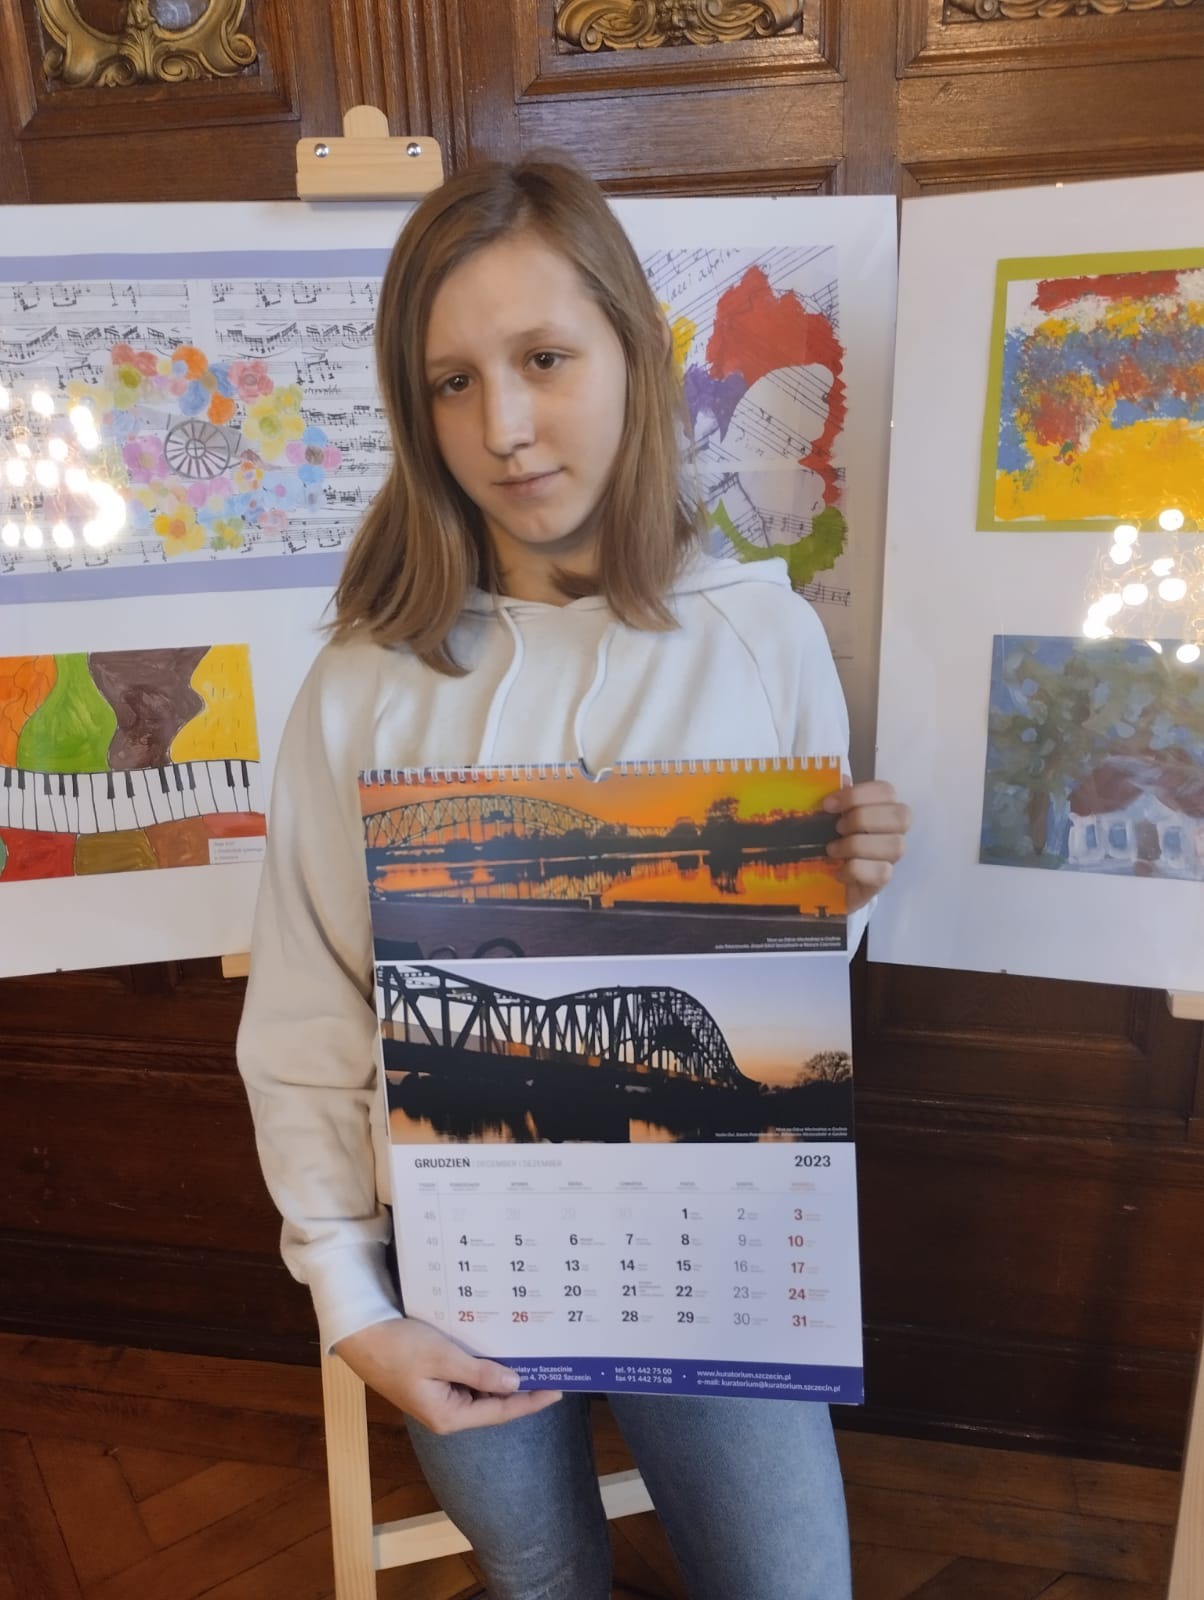 Julia prezentująca kalendarz z wykonanym przez siebie zwycięskim zdjęciem.